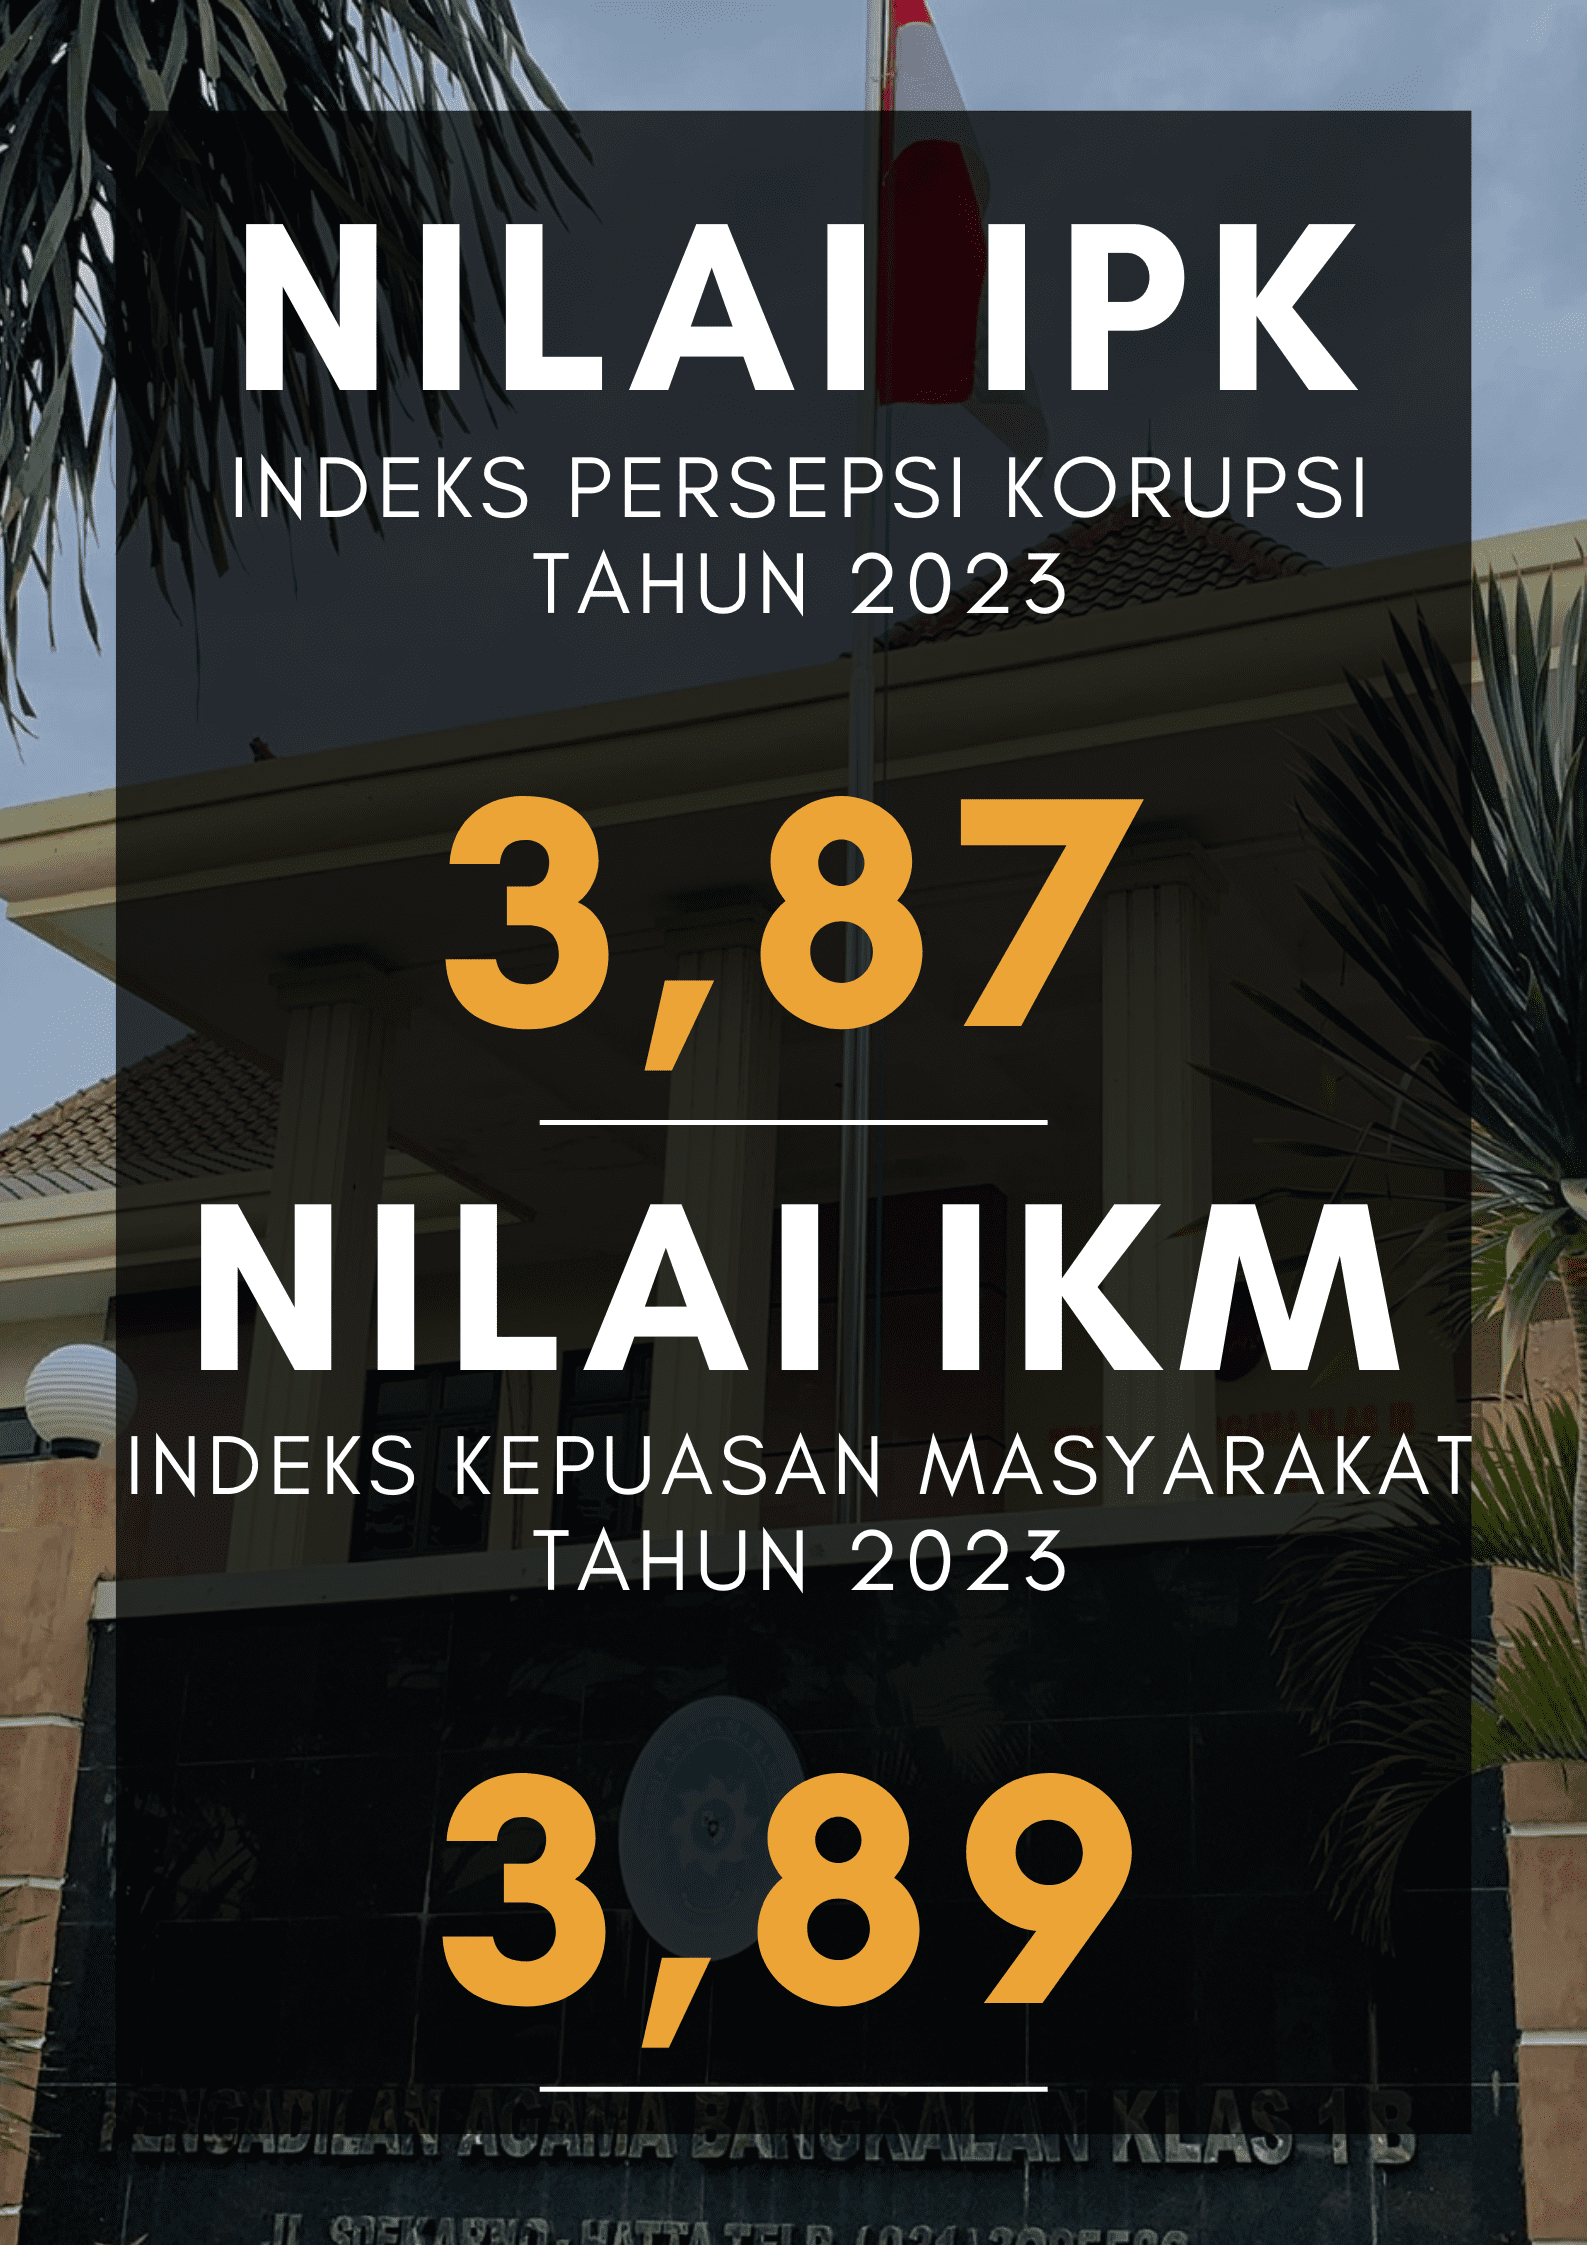 NILAI IPK Indeks Persepsi Korupsi 1